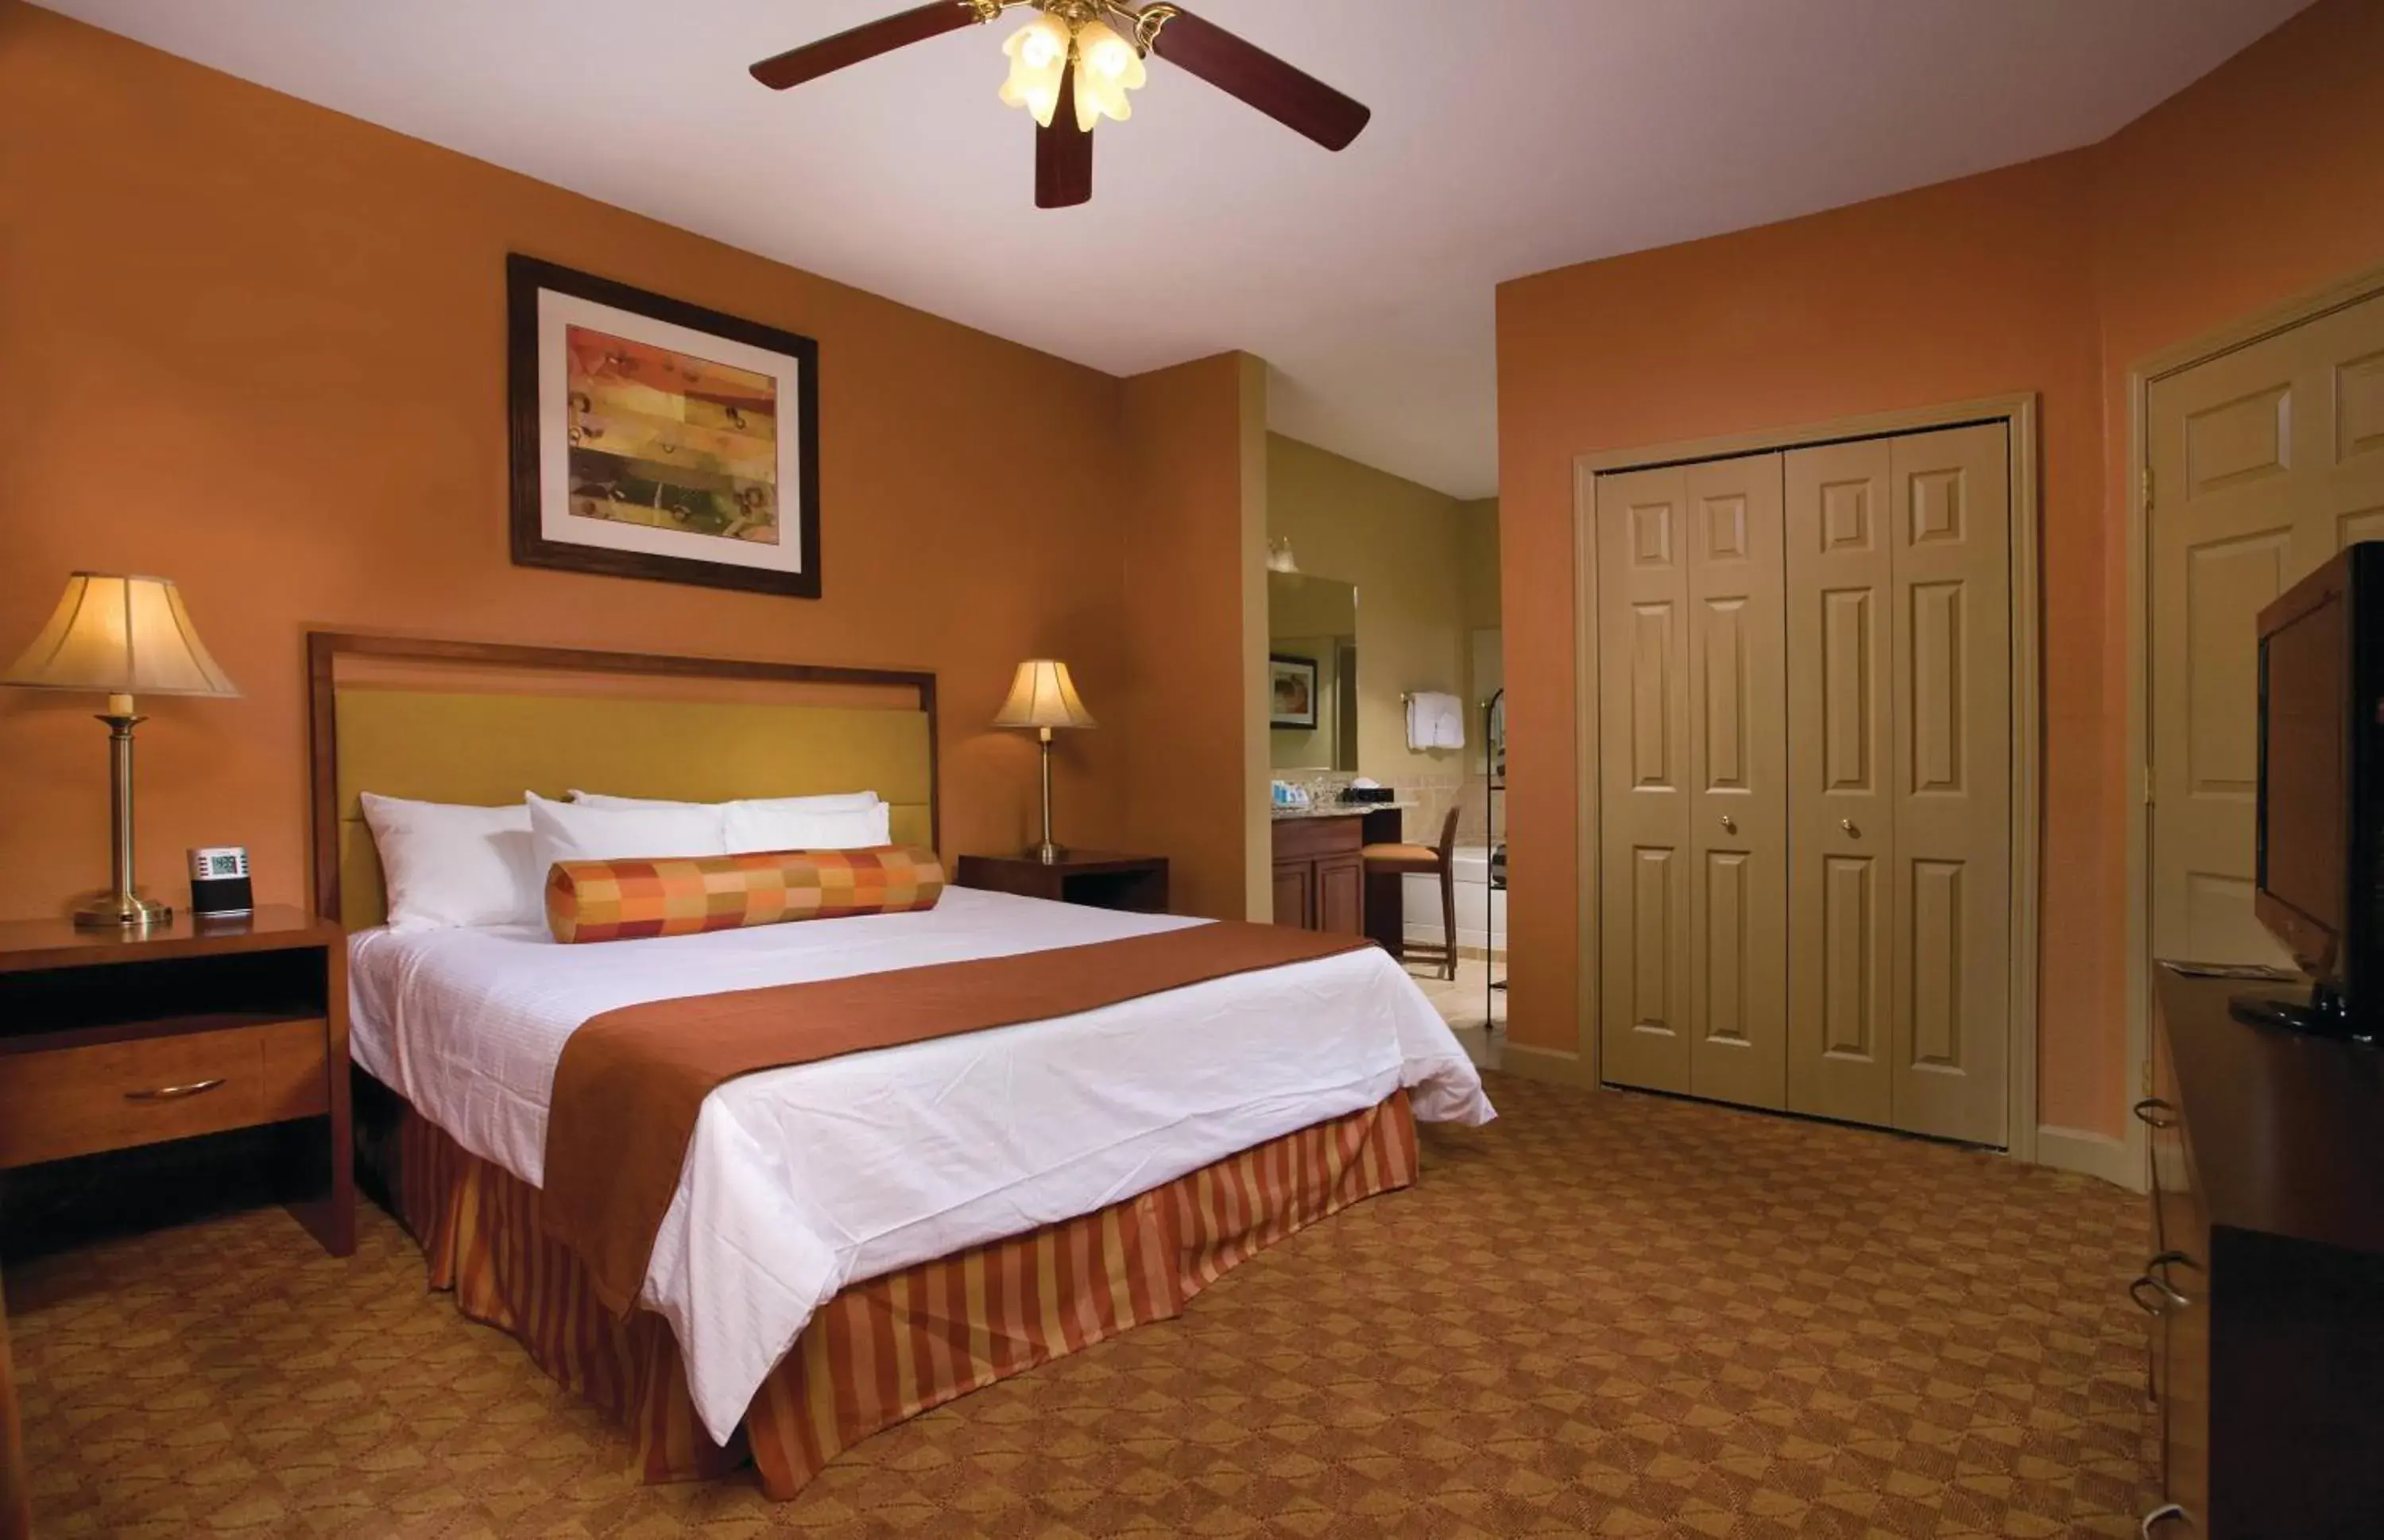 Two-Bedroom Condo in Wyndham Vacation Resorts - Nashville